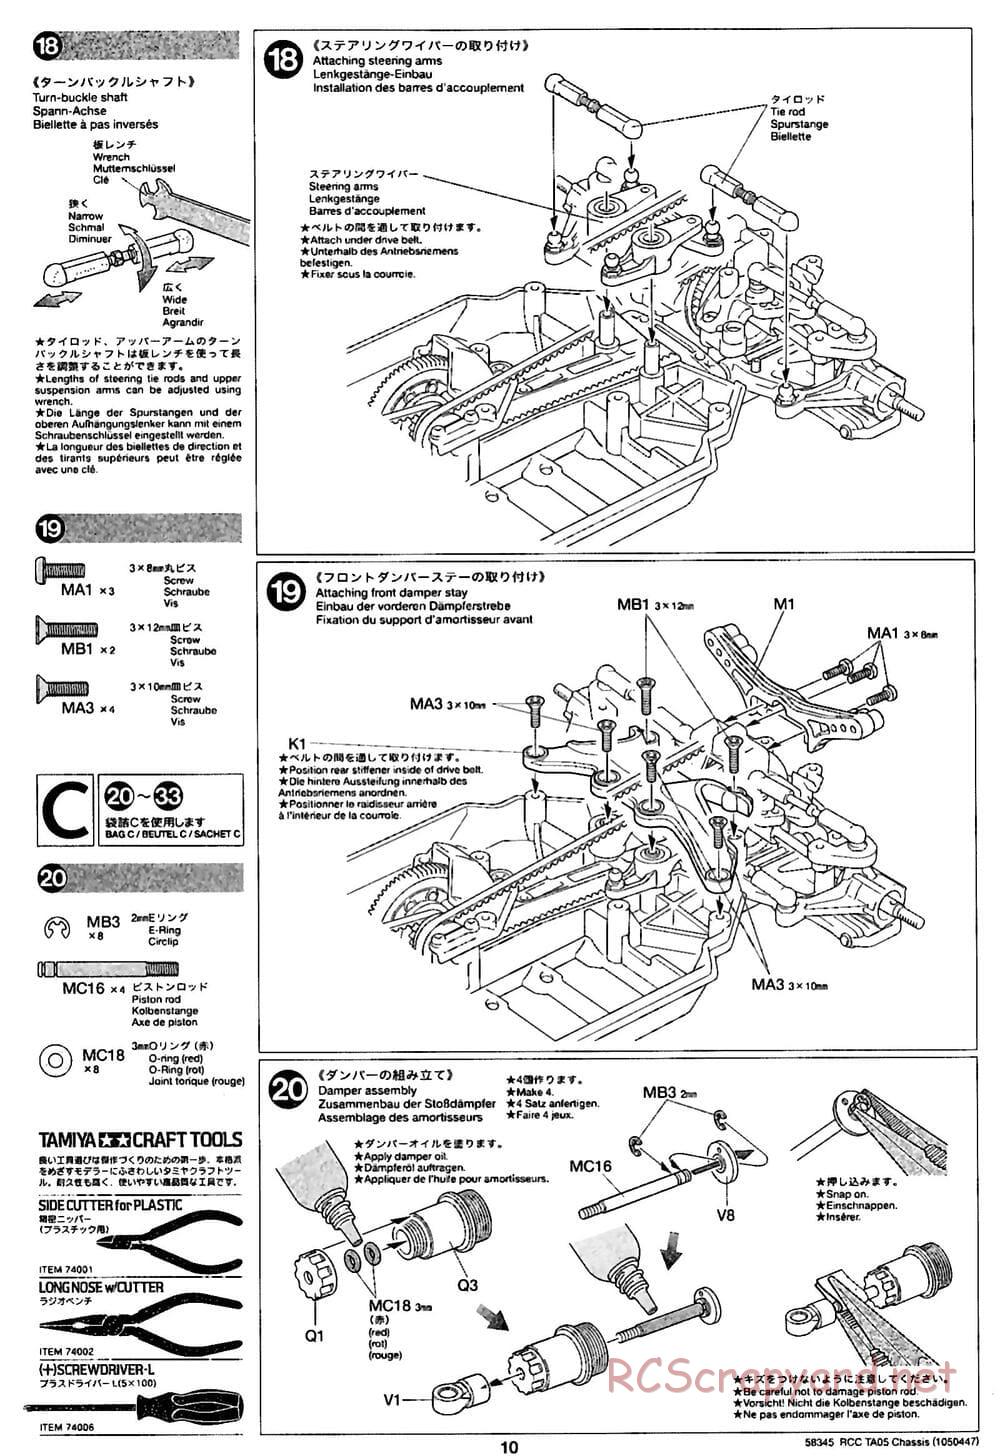 Tamiya - TA05 Chassis - Manual - Page 10